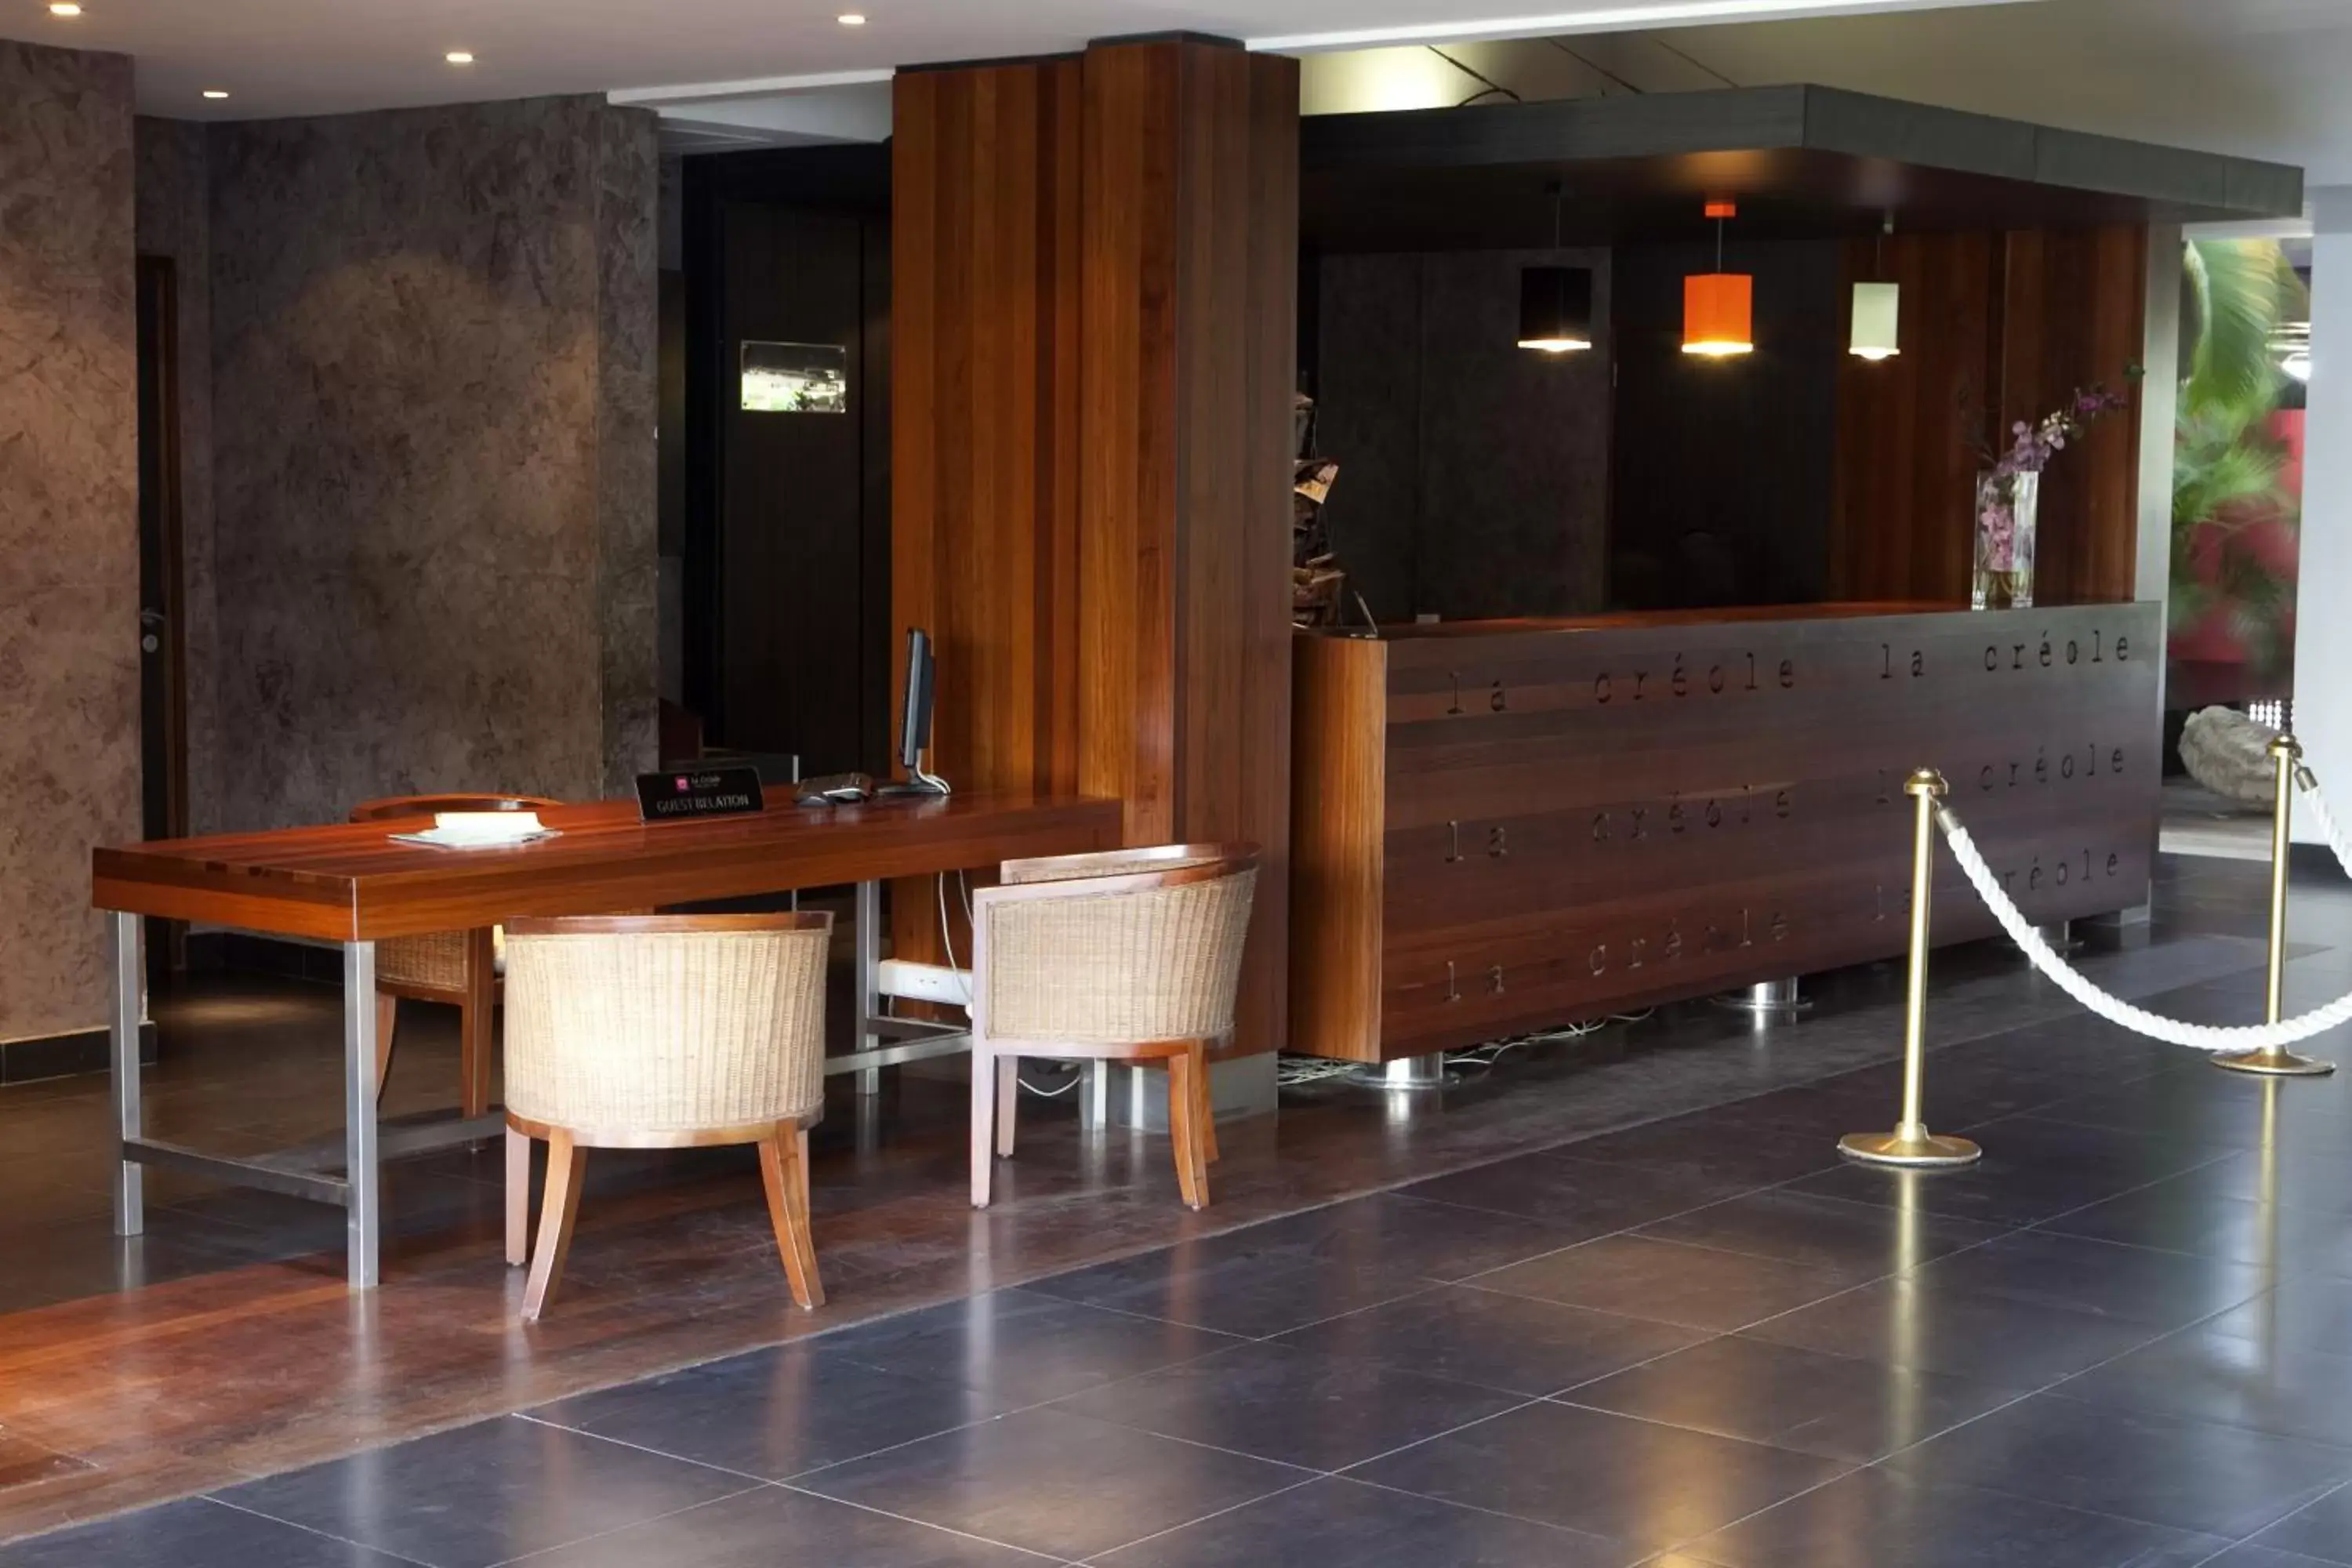 Lobby or reception in Mahogany Hotel Residence & Spa